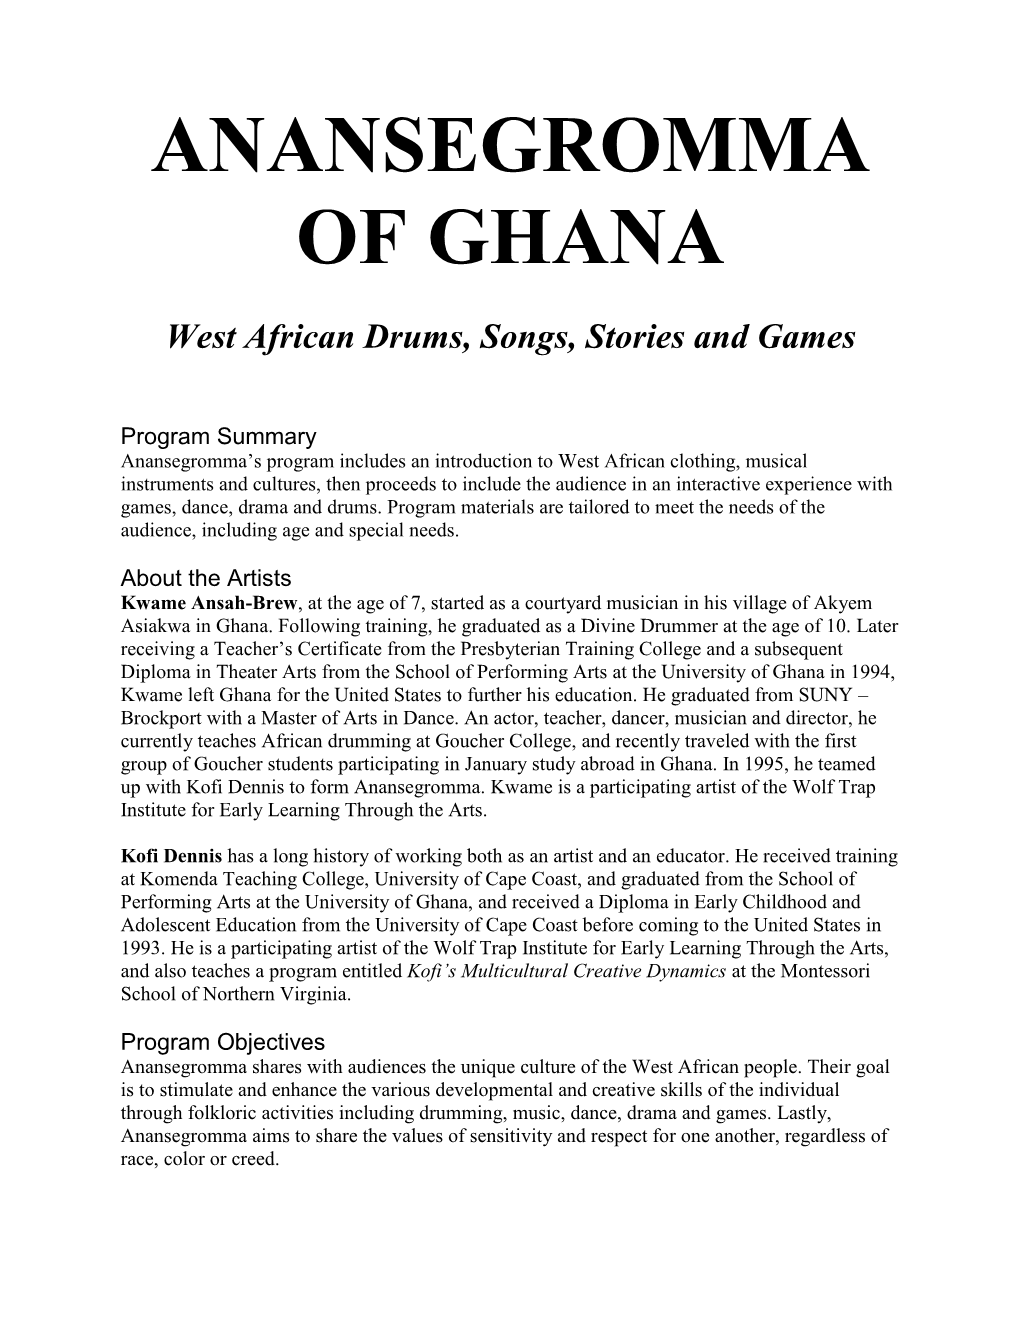 Anansegromma of Ghana